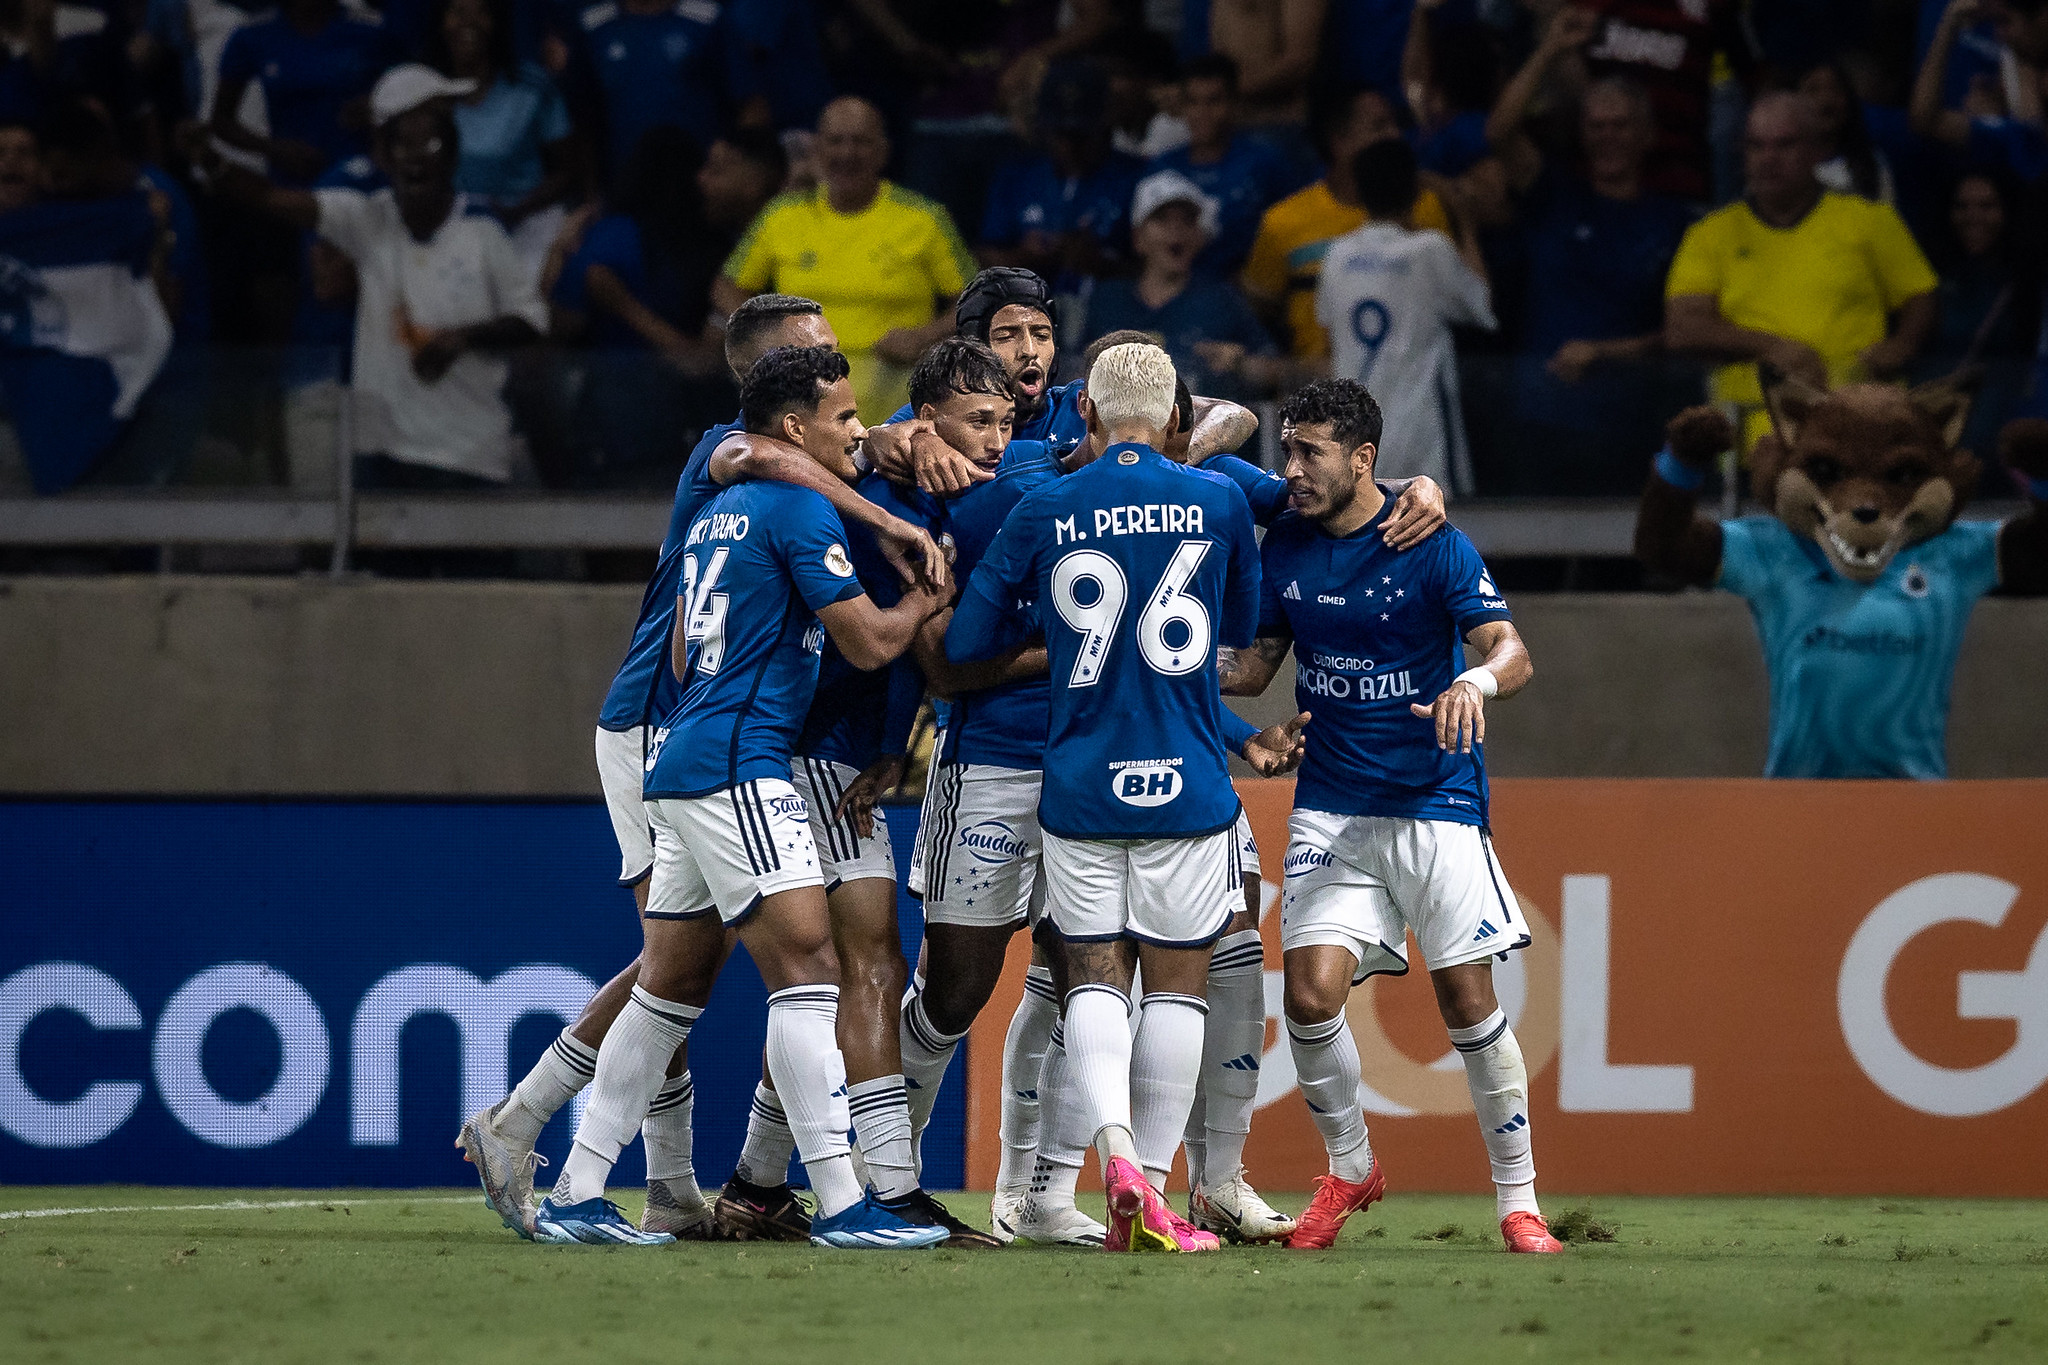 Cruzeiro garante permanecia na Série A (Foto: Staff Images/Cruzeiro)